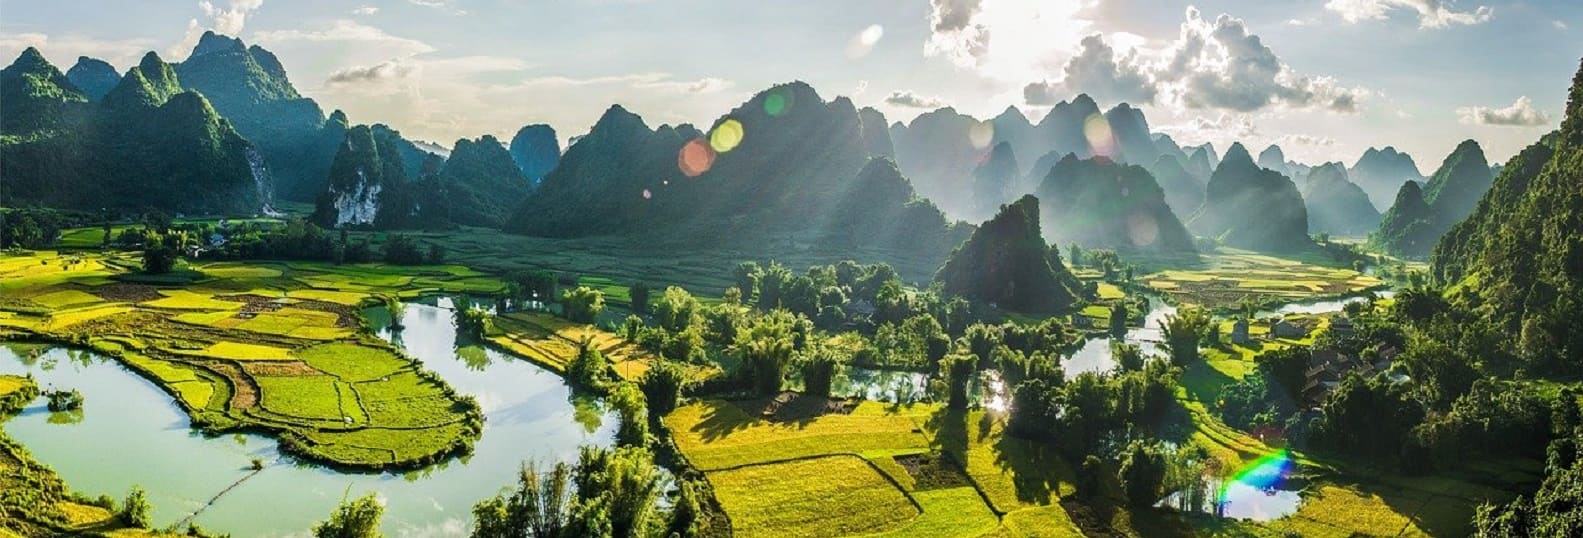 Petite baie d'Halong_Vietnam_Voyage culturel